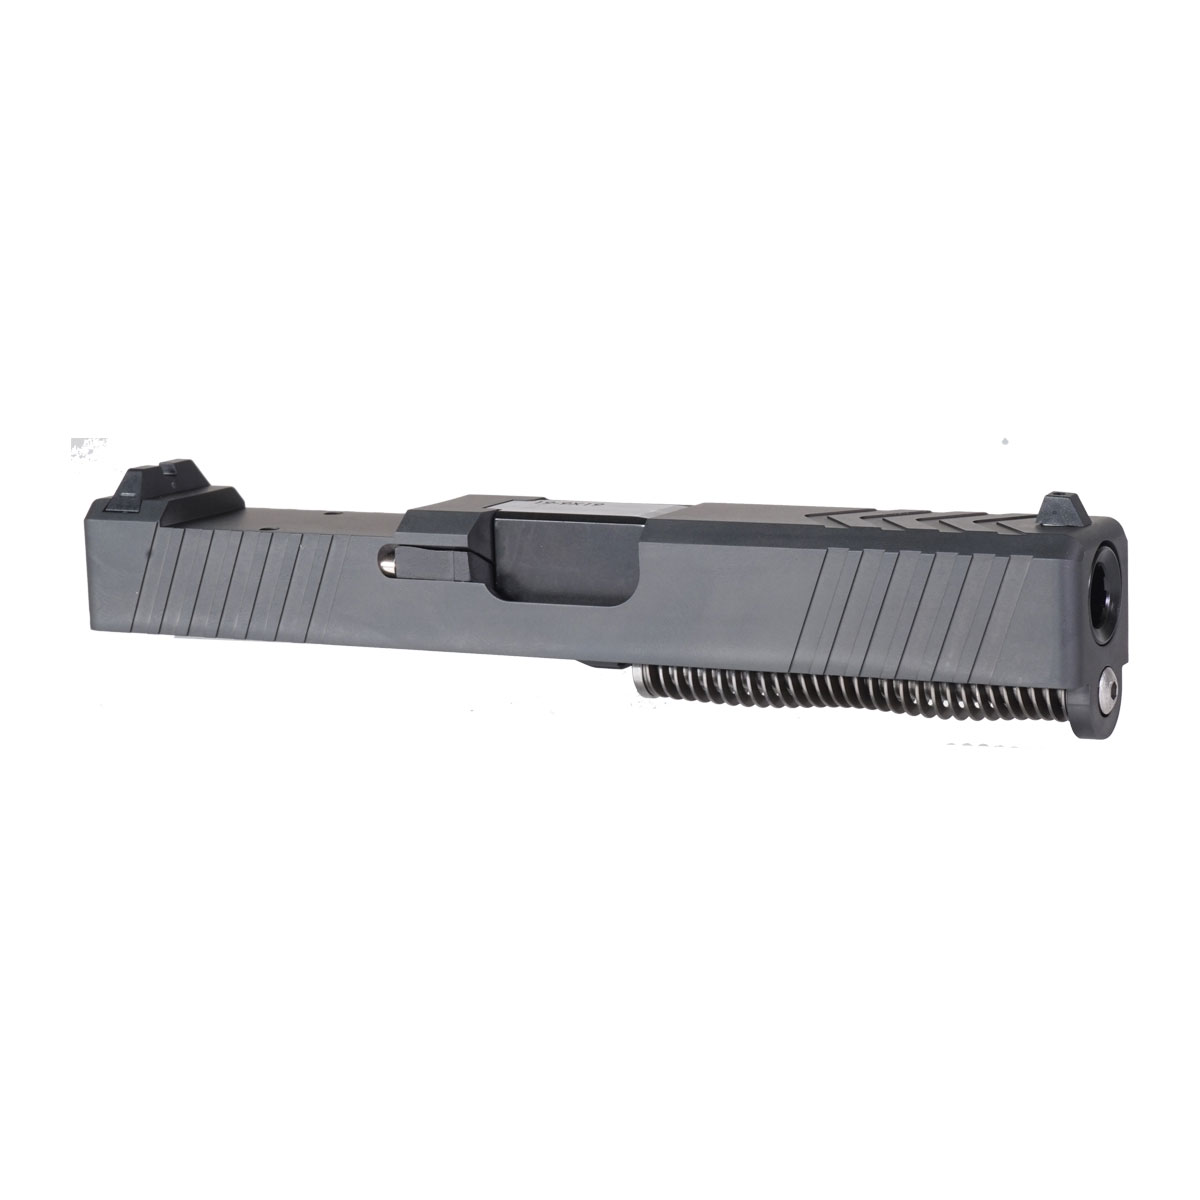 DDS 'The Petersen' 9mm Complete Slide Kit - Glock 19 Gen 1-3 Compatible